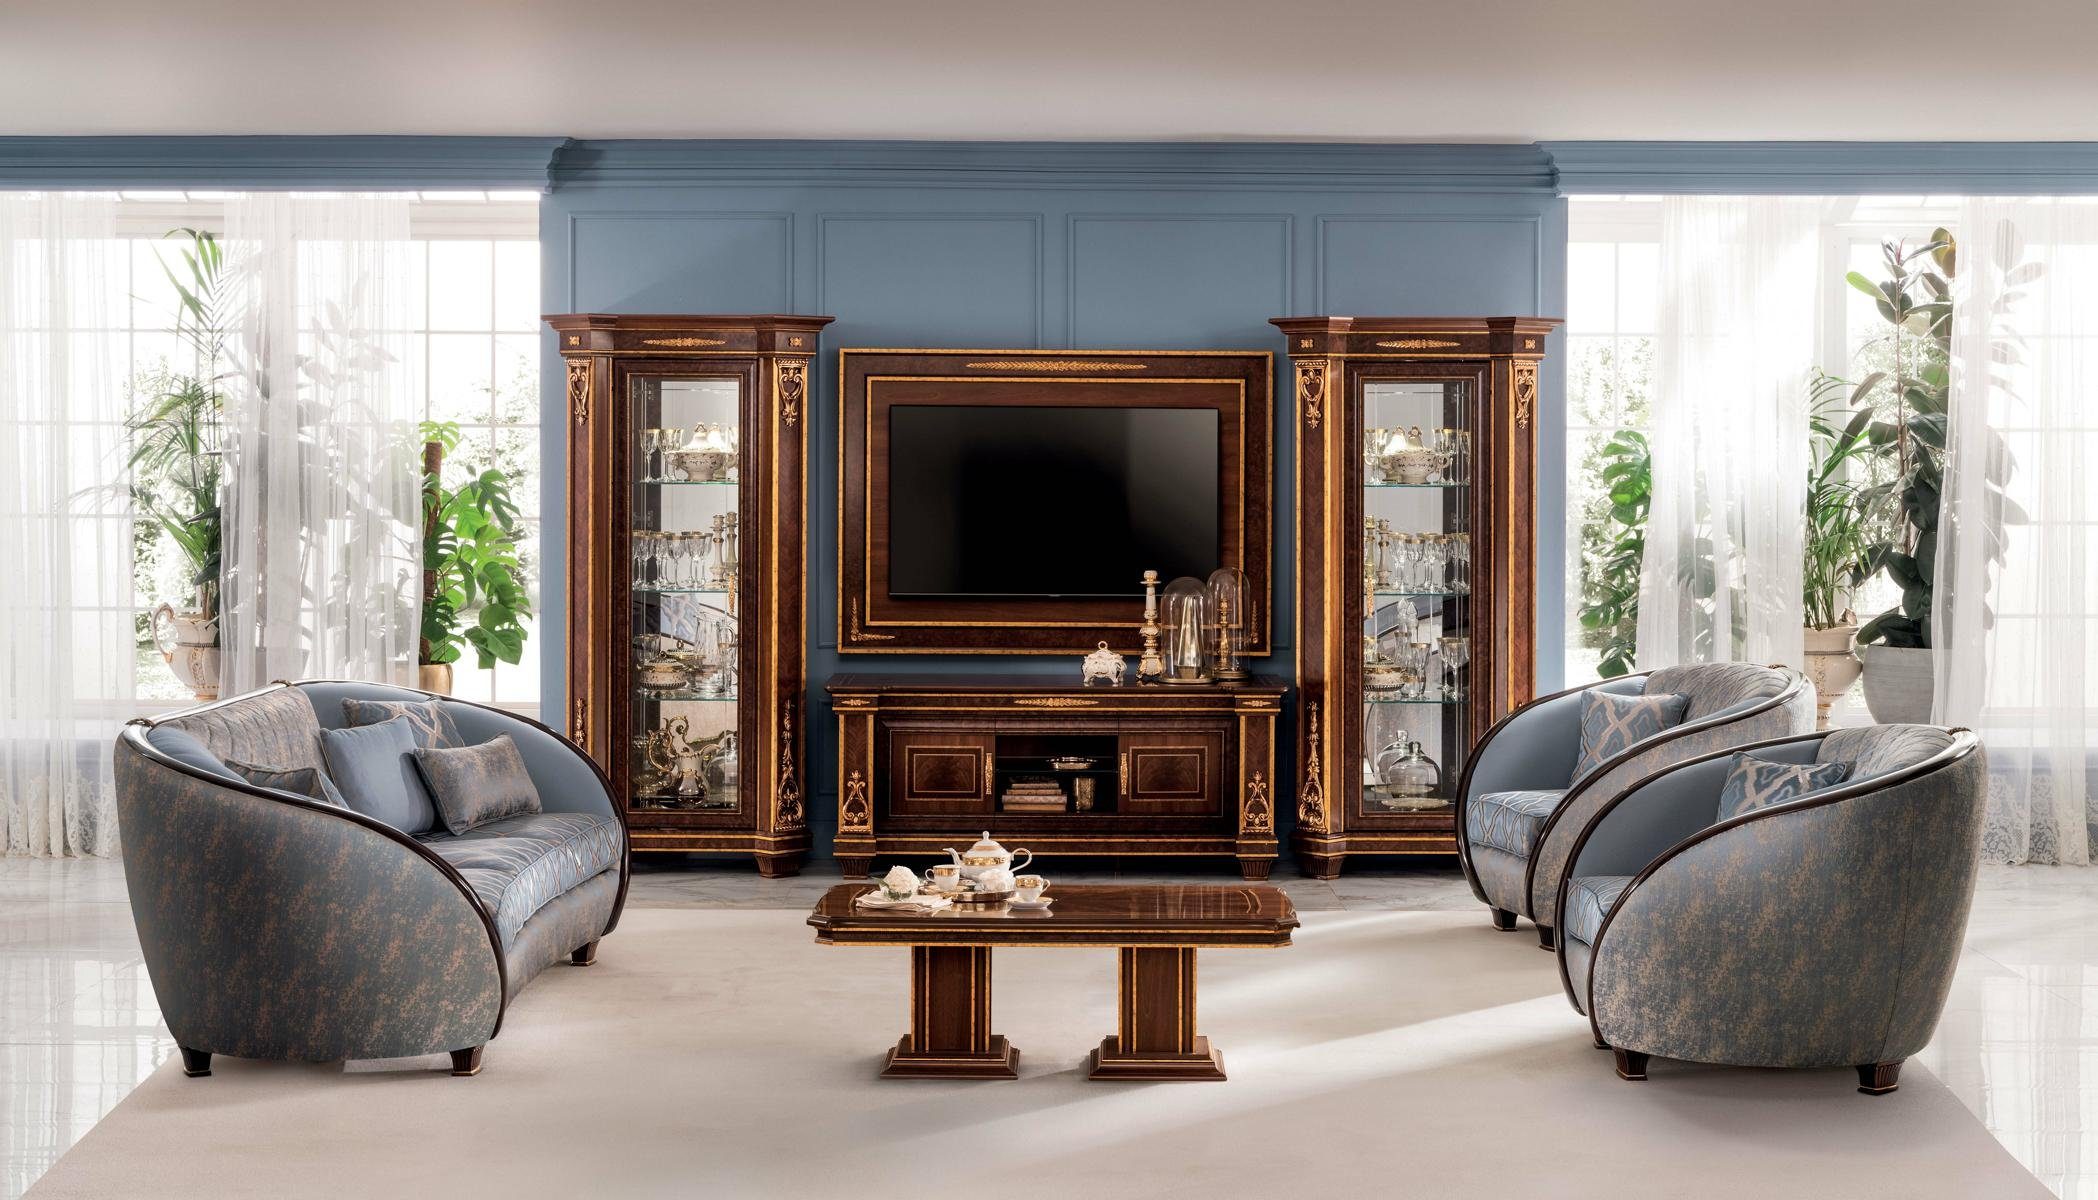 JVmoebel Wohnzimmer-Set, Luxus Sofagarnitur Klasse 3+1 Italienische Möbel  Couch Sofa Neu arredoclassic™ online kaufen | OTTO